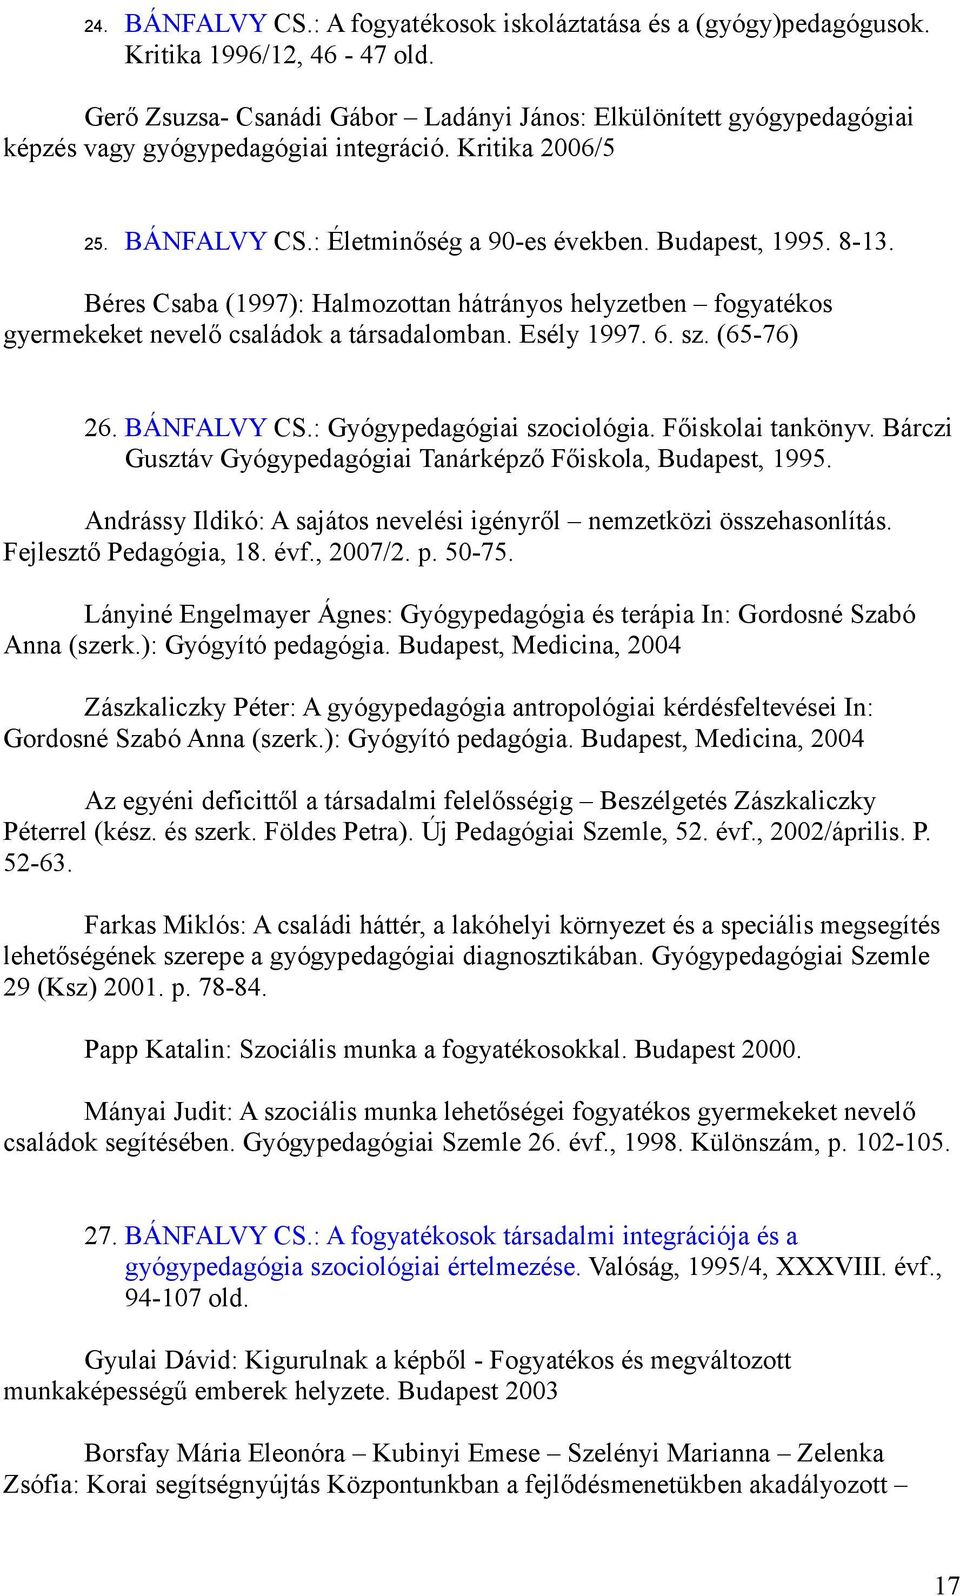 Bánfalvy Csaba. Publikációs lista 1 - PDF Ingyenes letöltés